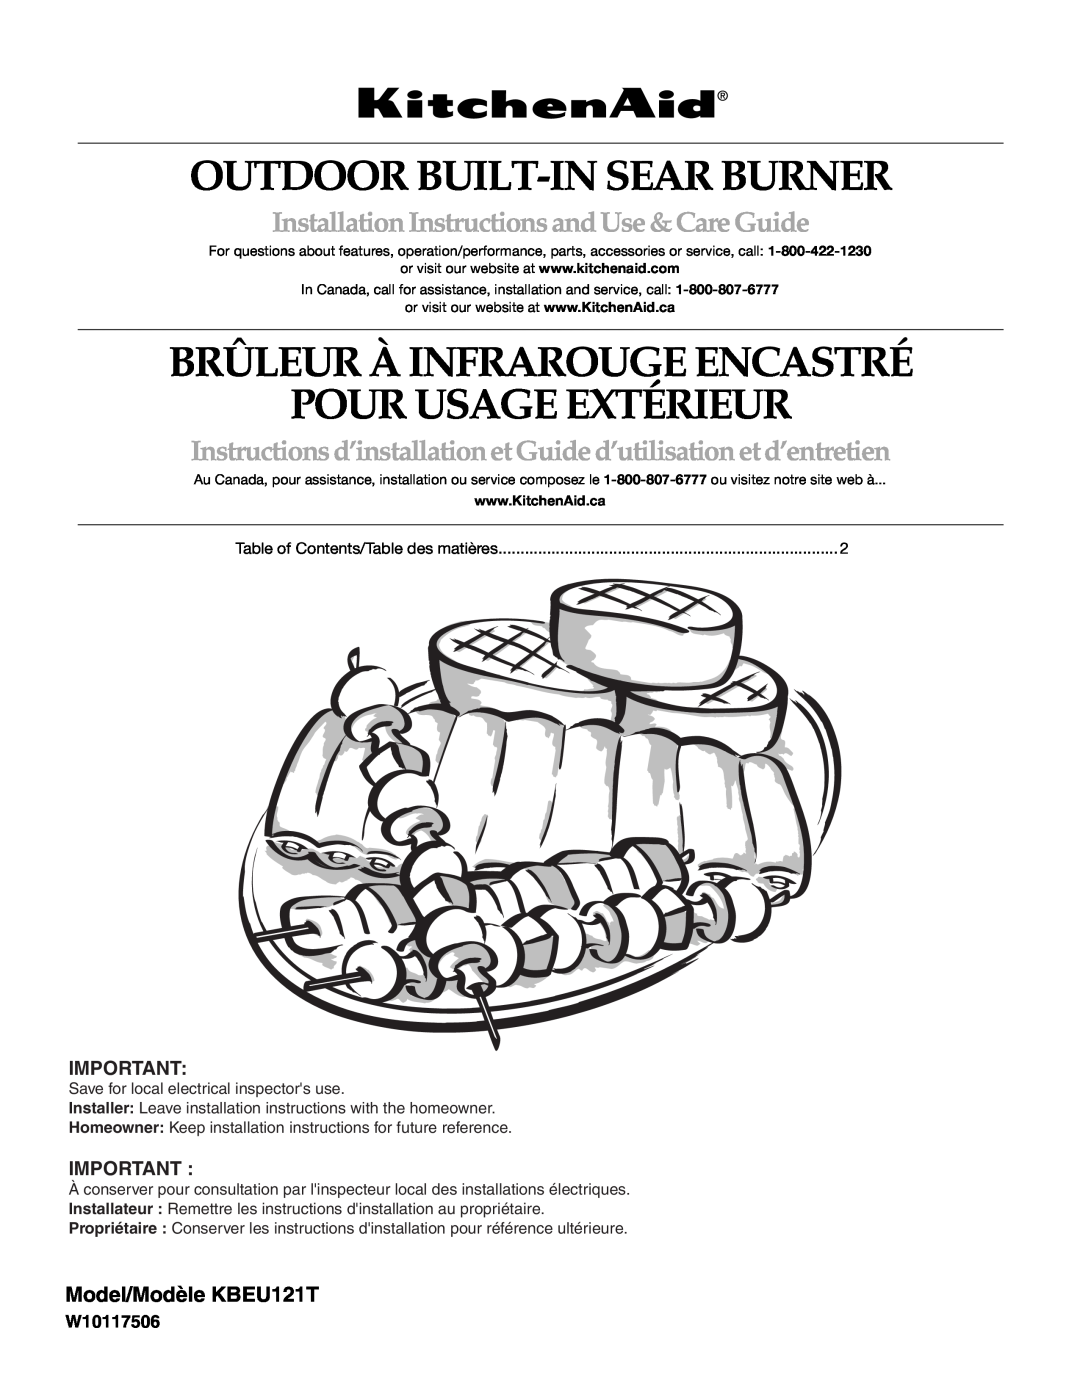 KitchenAid KBEU121T installation instructions Outdoor Built-Insear Burner, Brûleur À Infrarouge Encastré, W10117506 